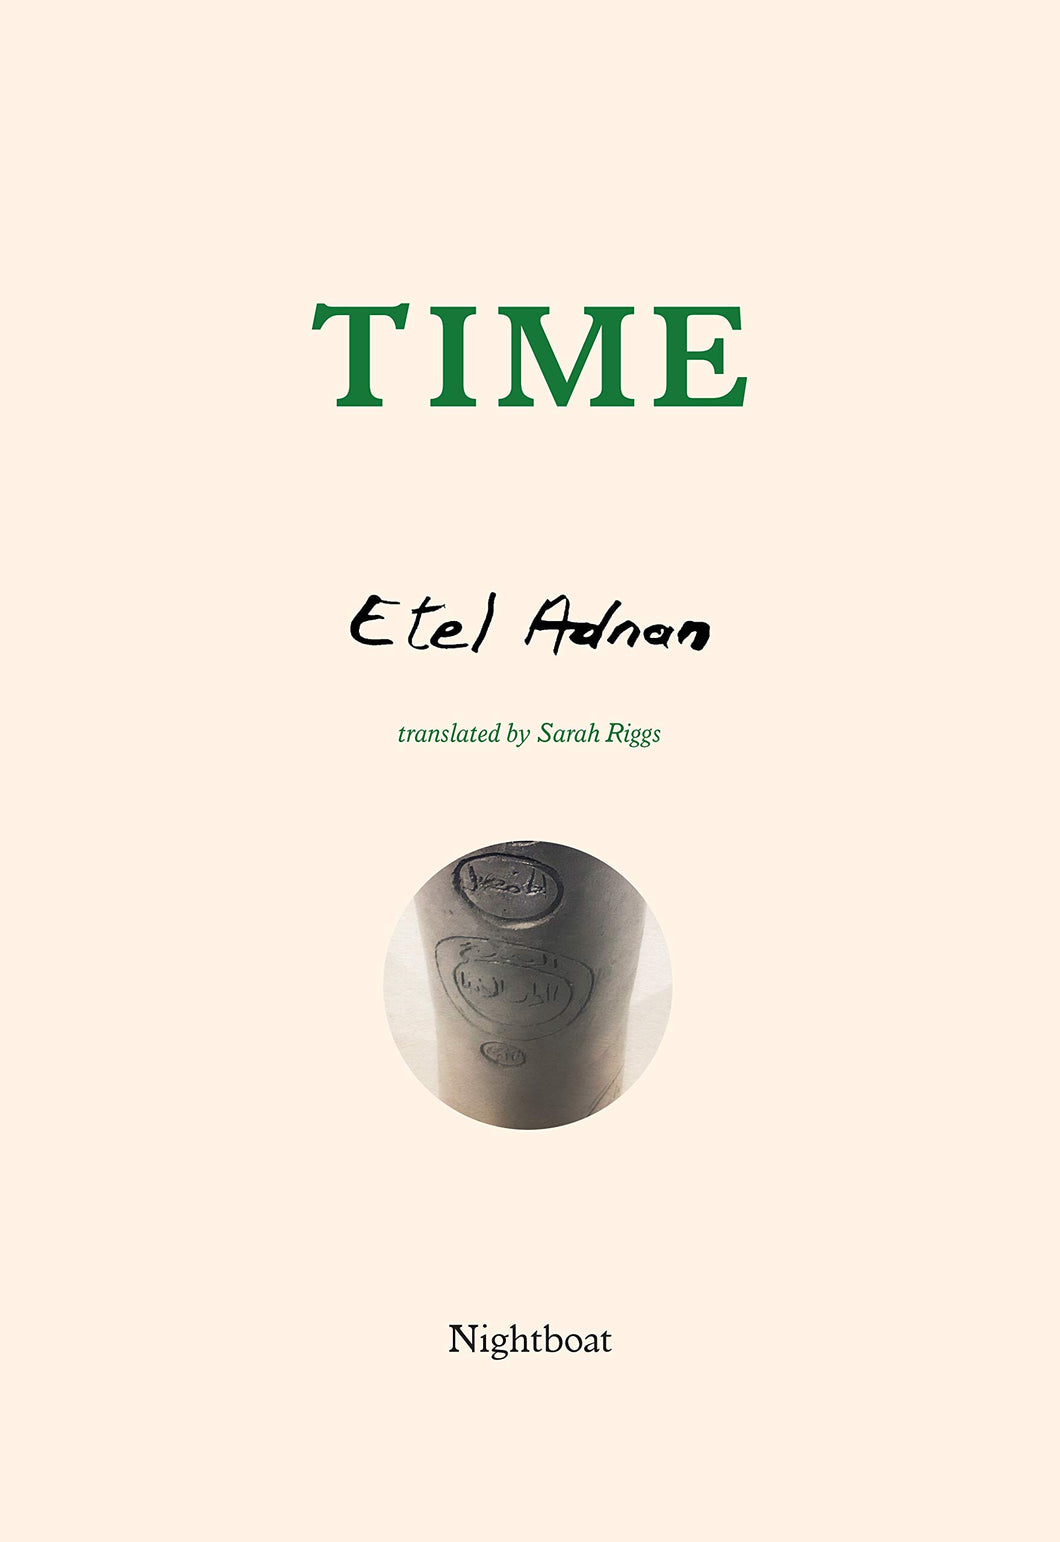 Time by Etel Adnan